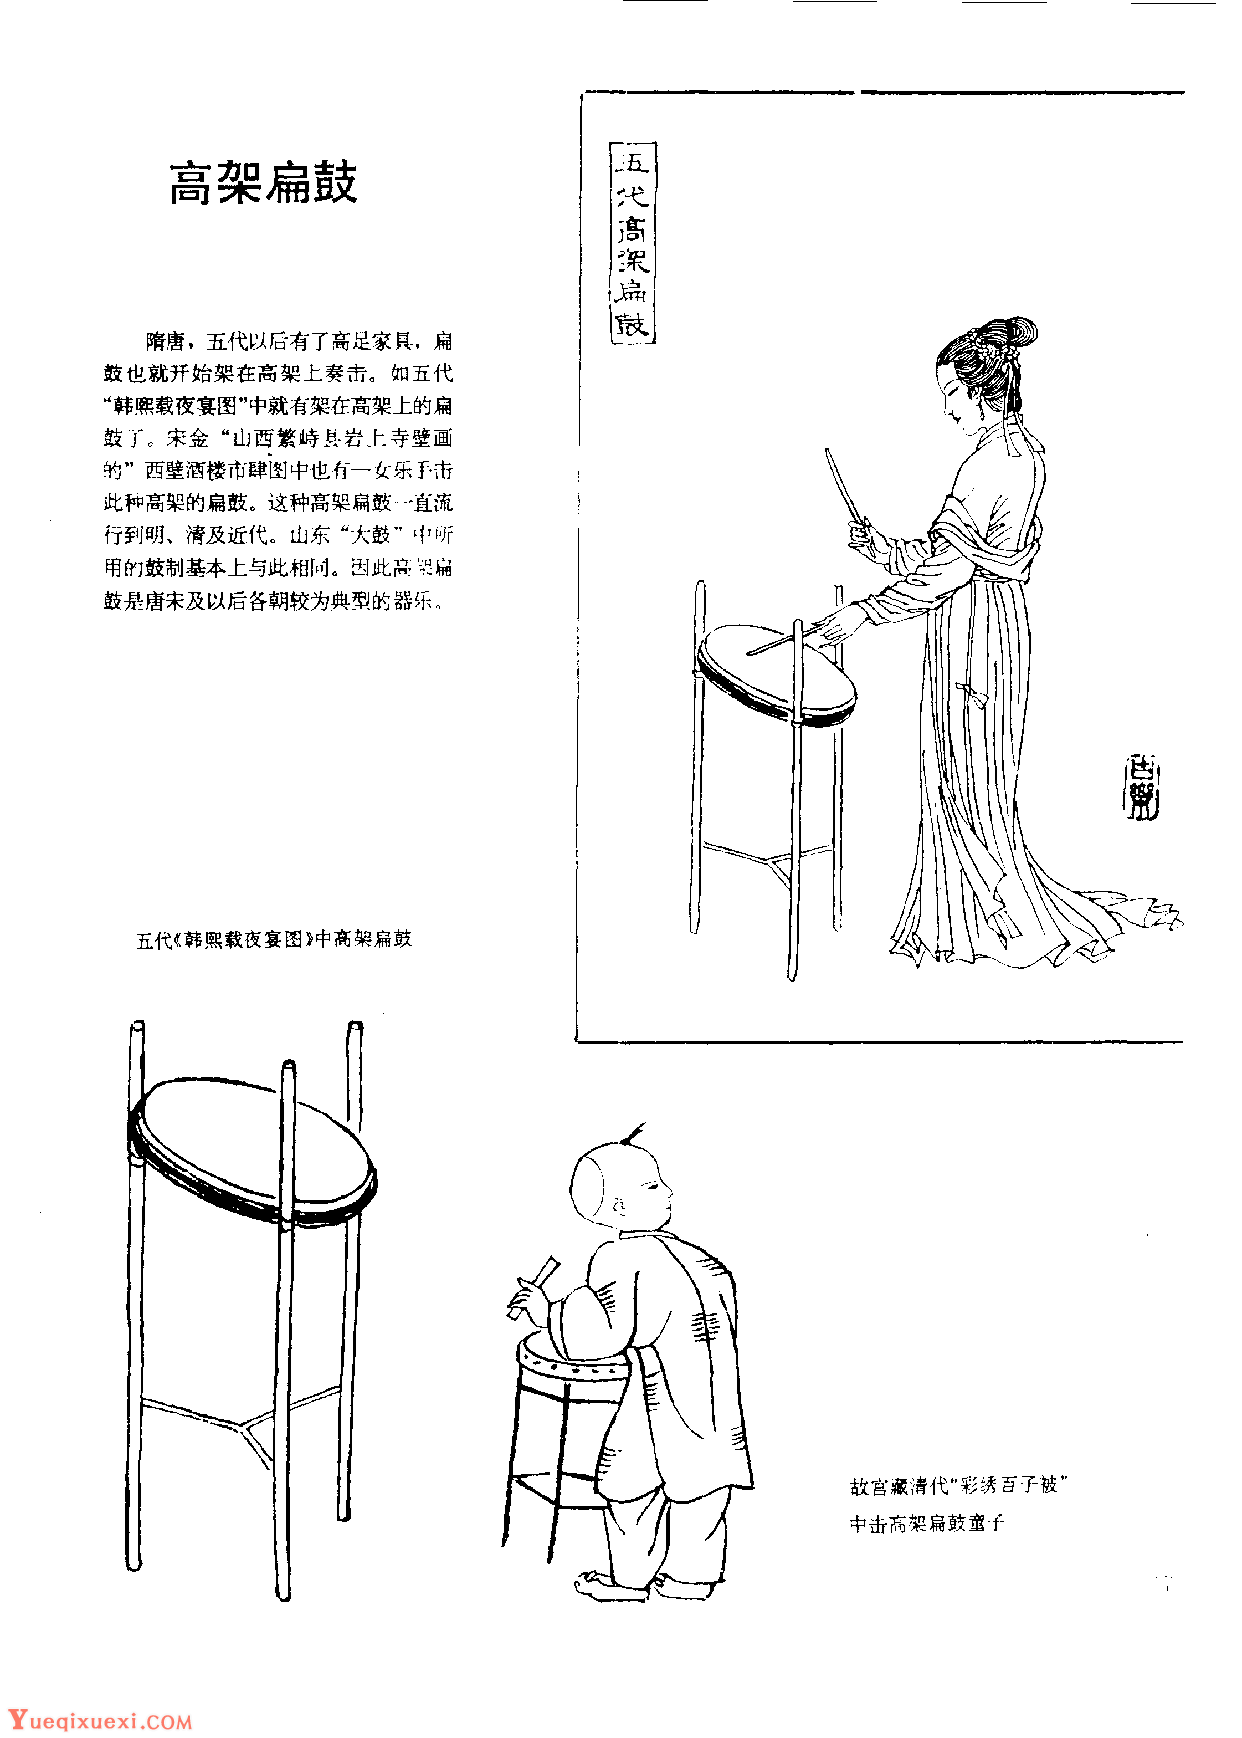 中国古代乐器《高架扁鼓》